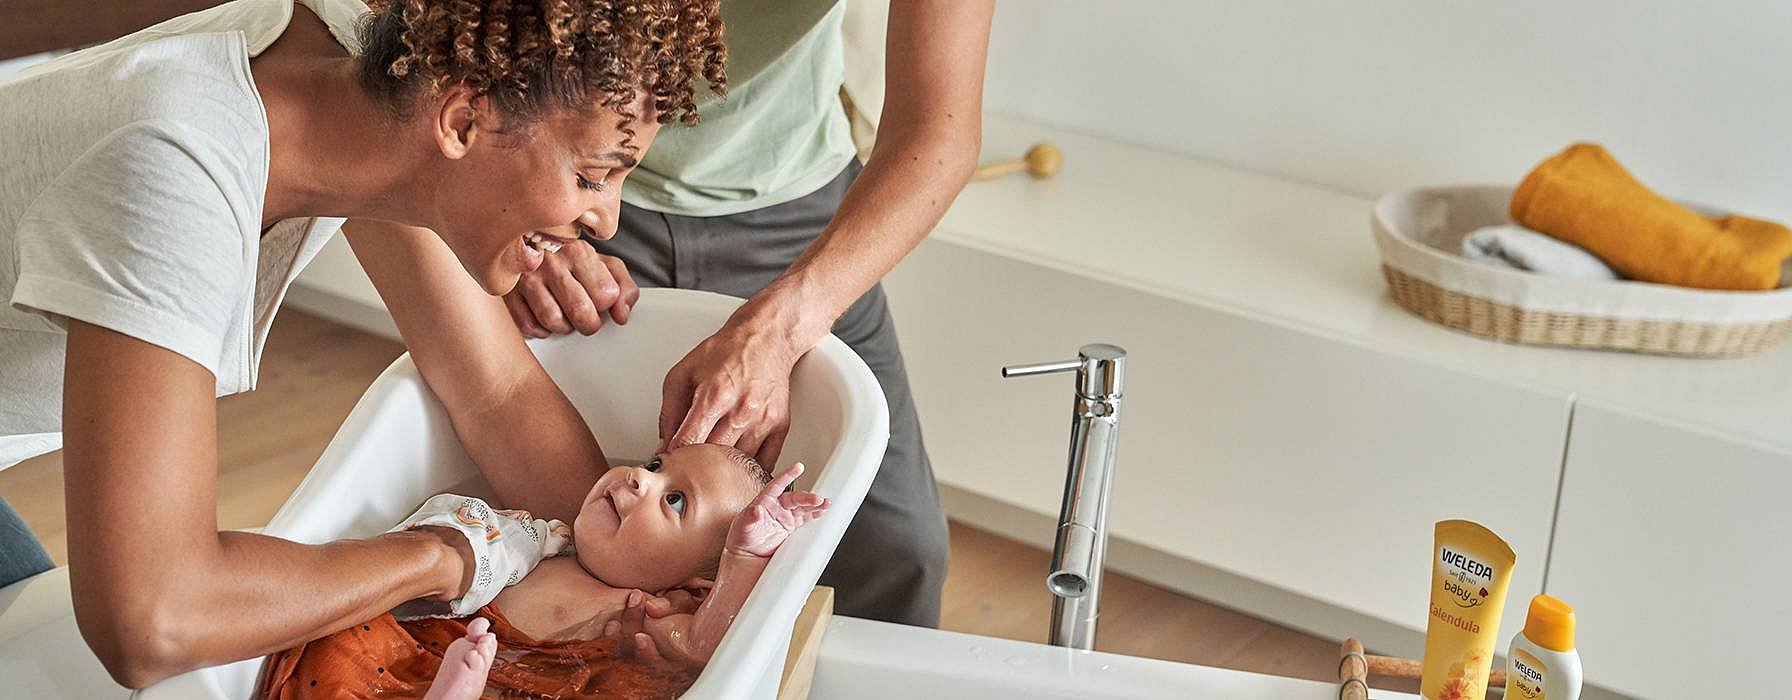 Naissance : pourquoi conserver le vernix sur la peau de bébé